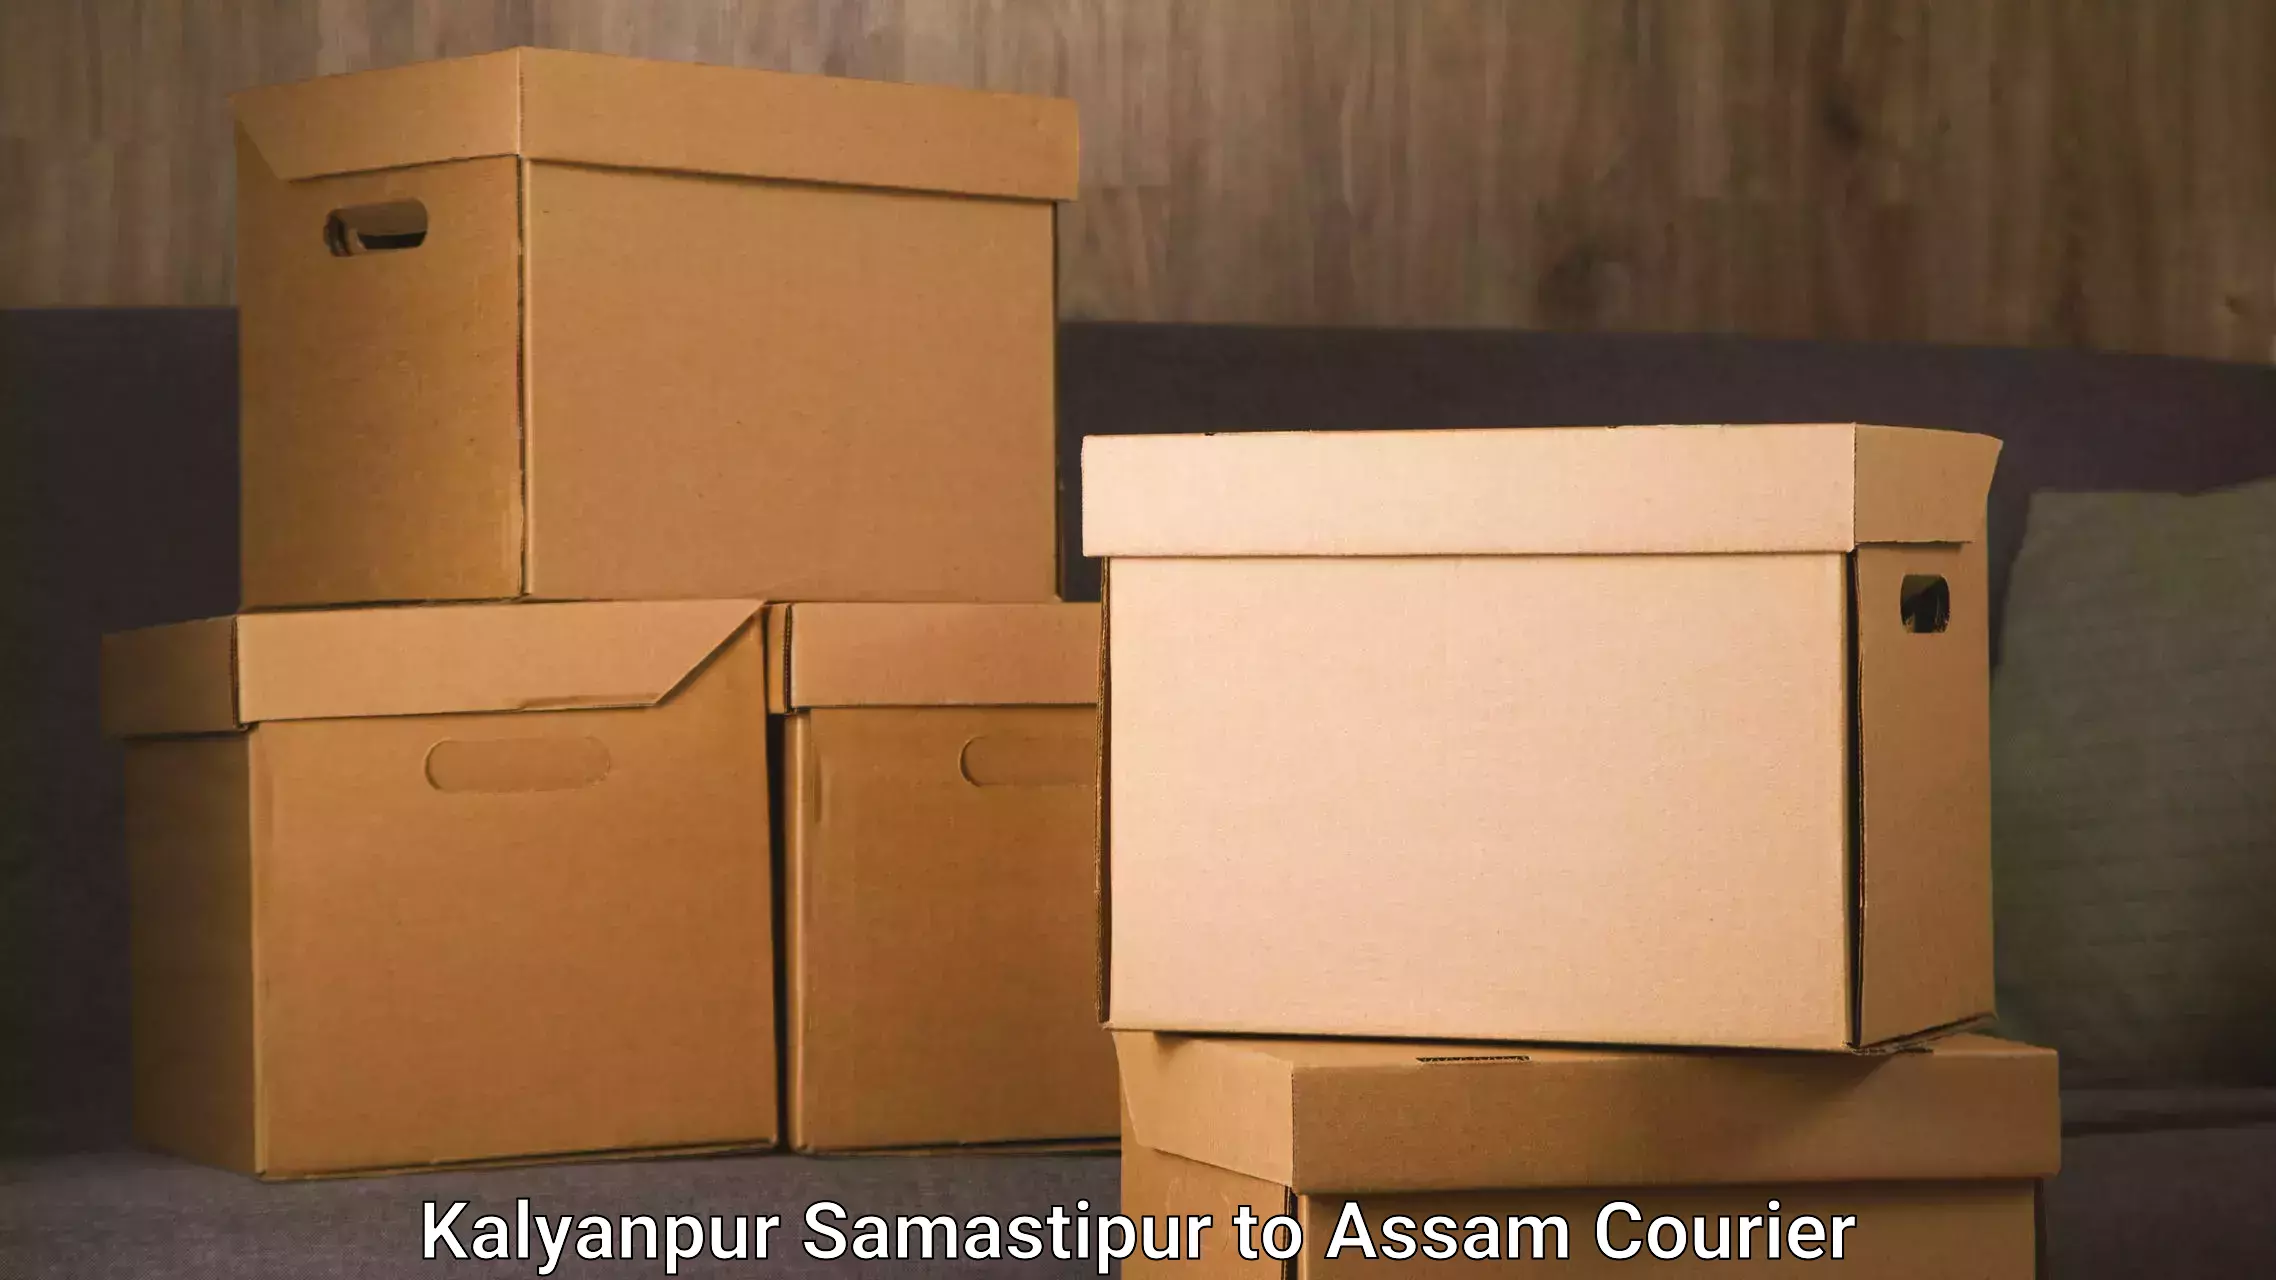 Furniture transport and storage Kalyanpur Samastipur to Balapara